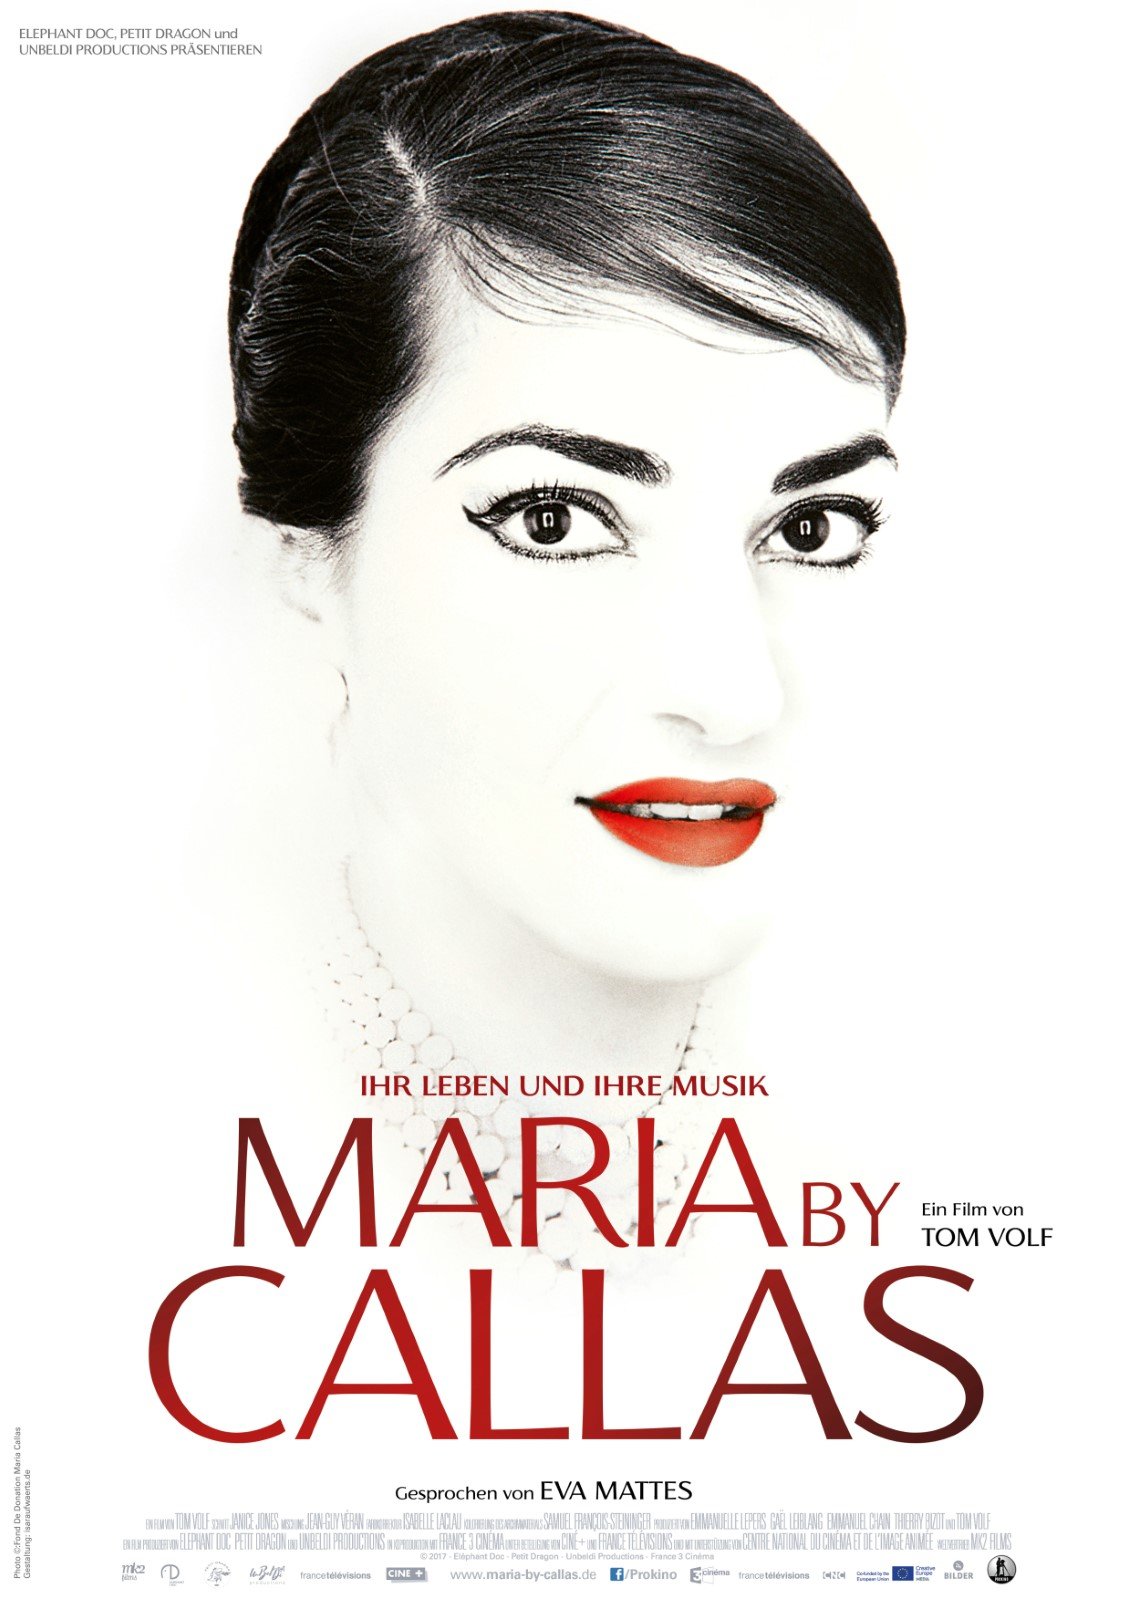 Kann man irgendwo Maria by Callas anschauen? kostenlosen openload kkiste kinox